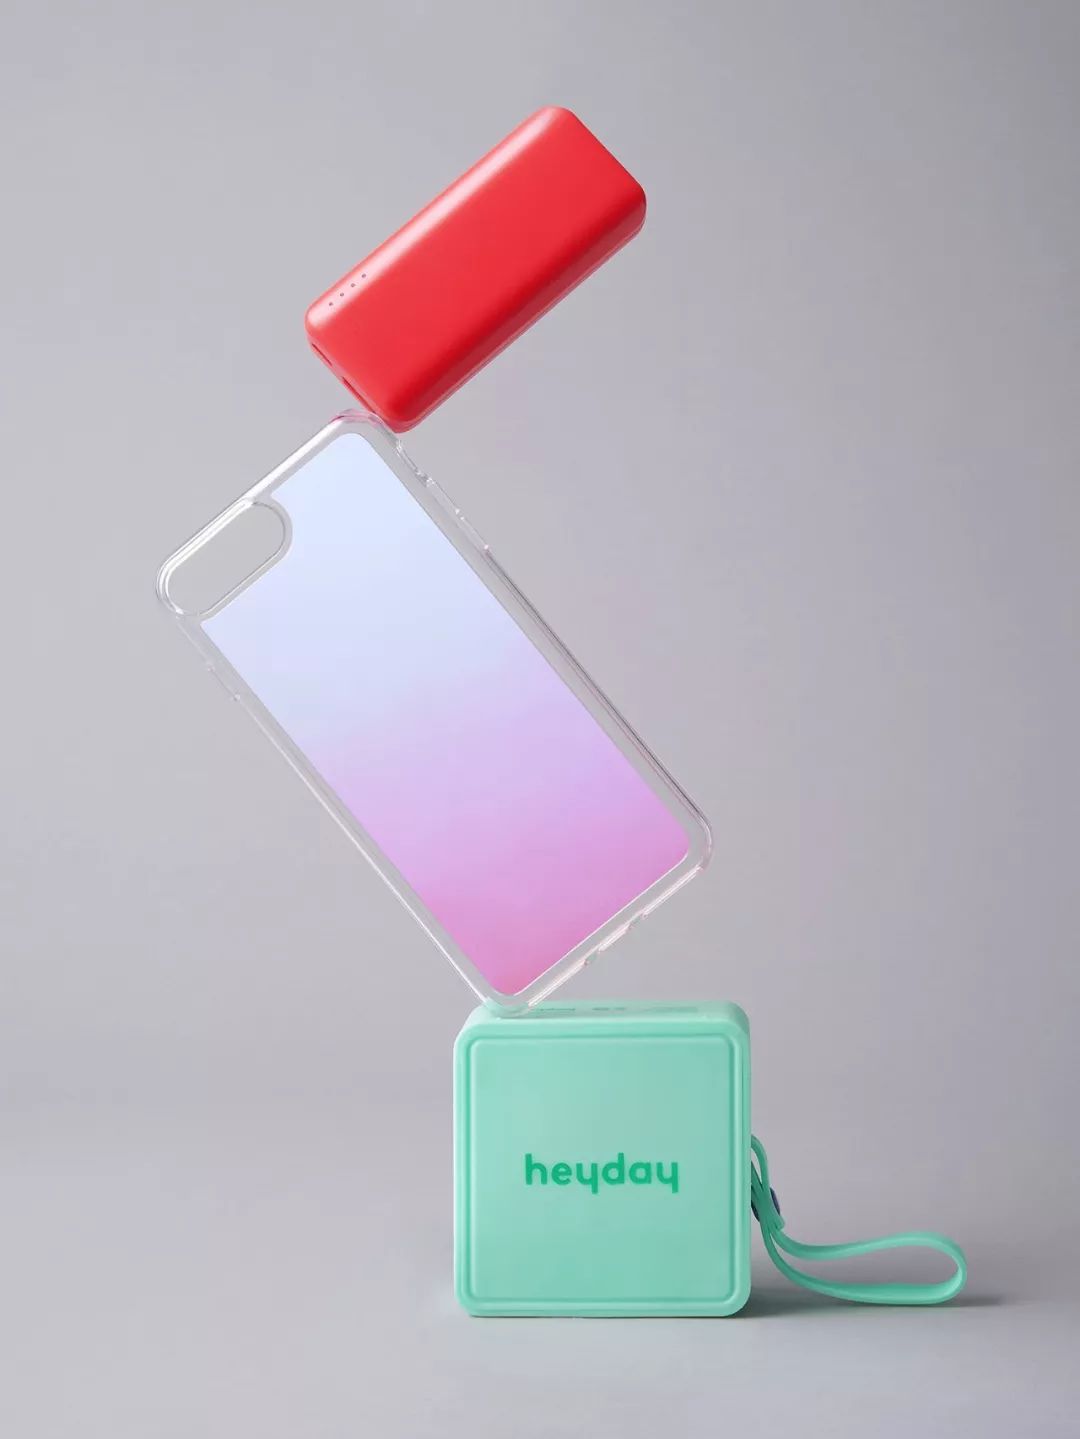 電子 數碼配件品牌“Heyday”推出了品牌形象 19